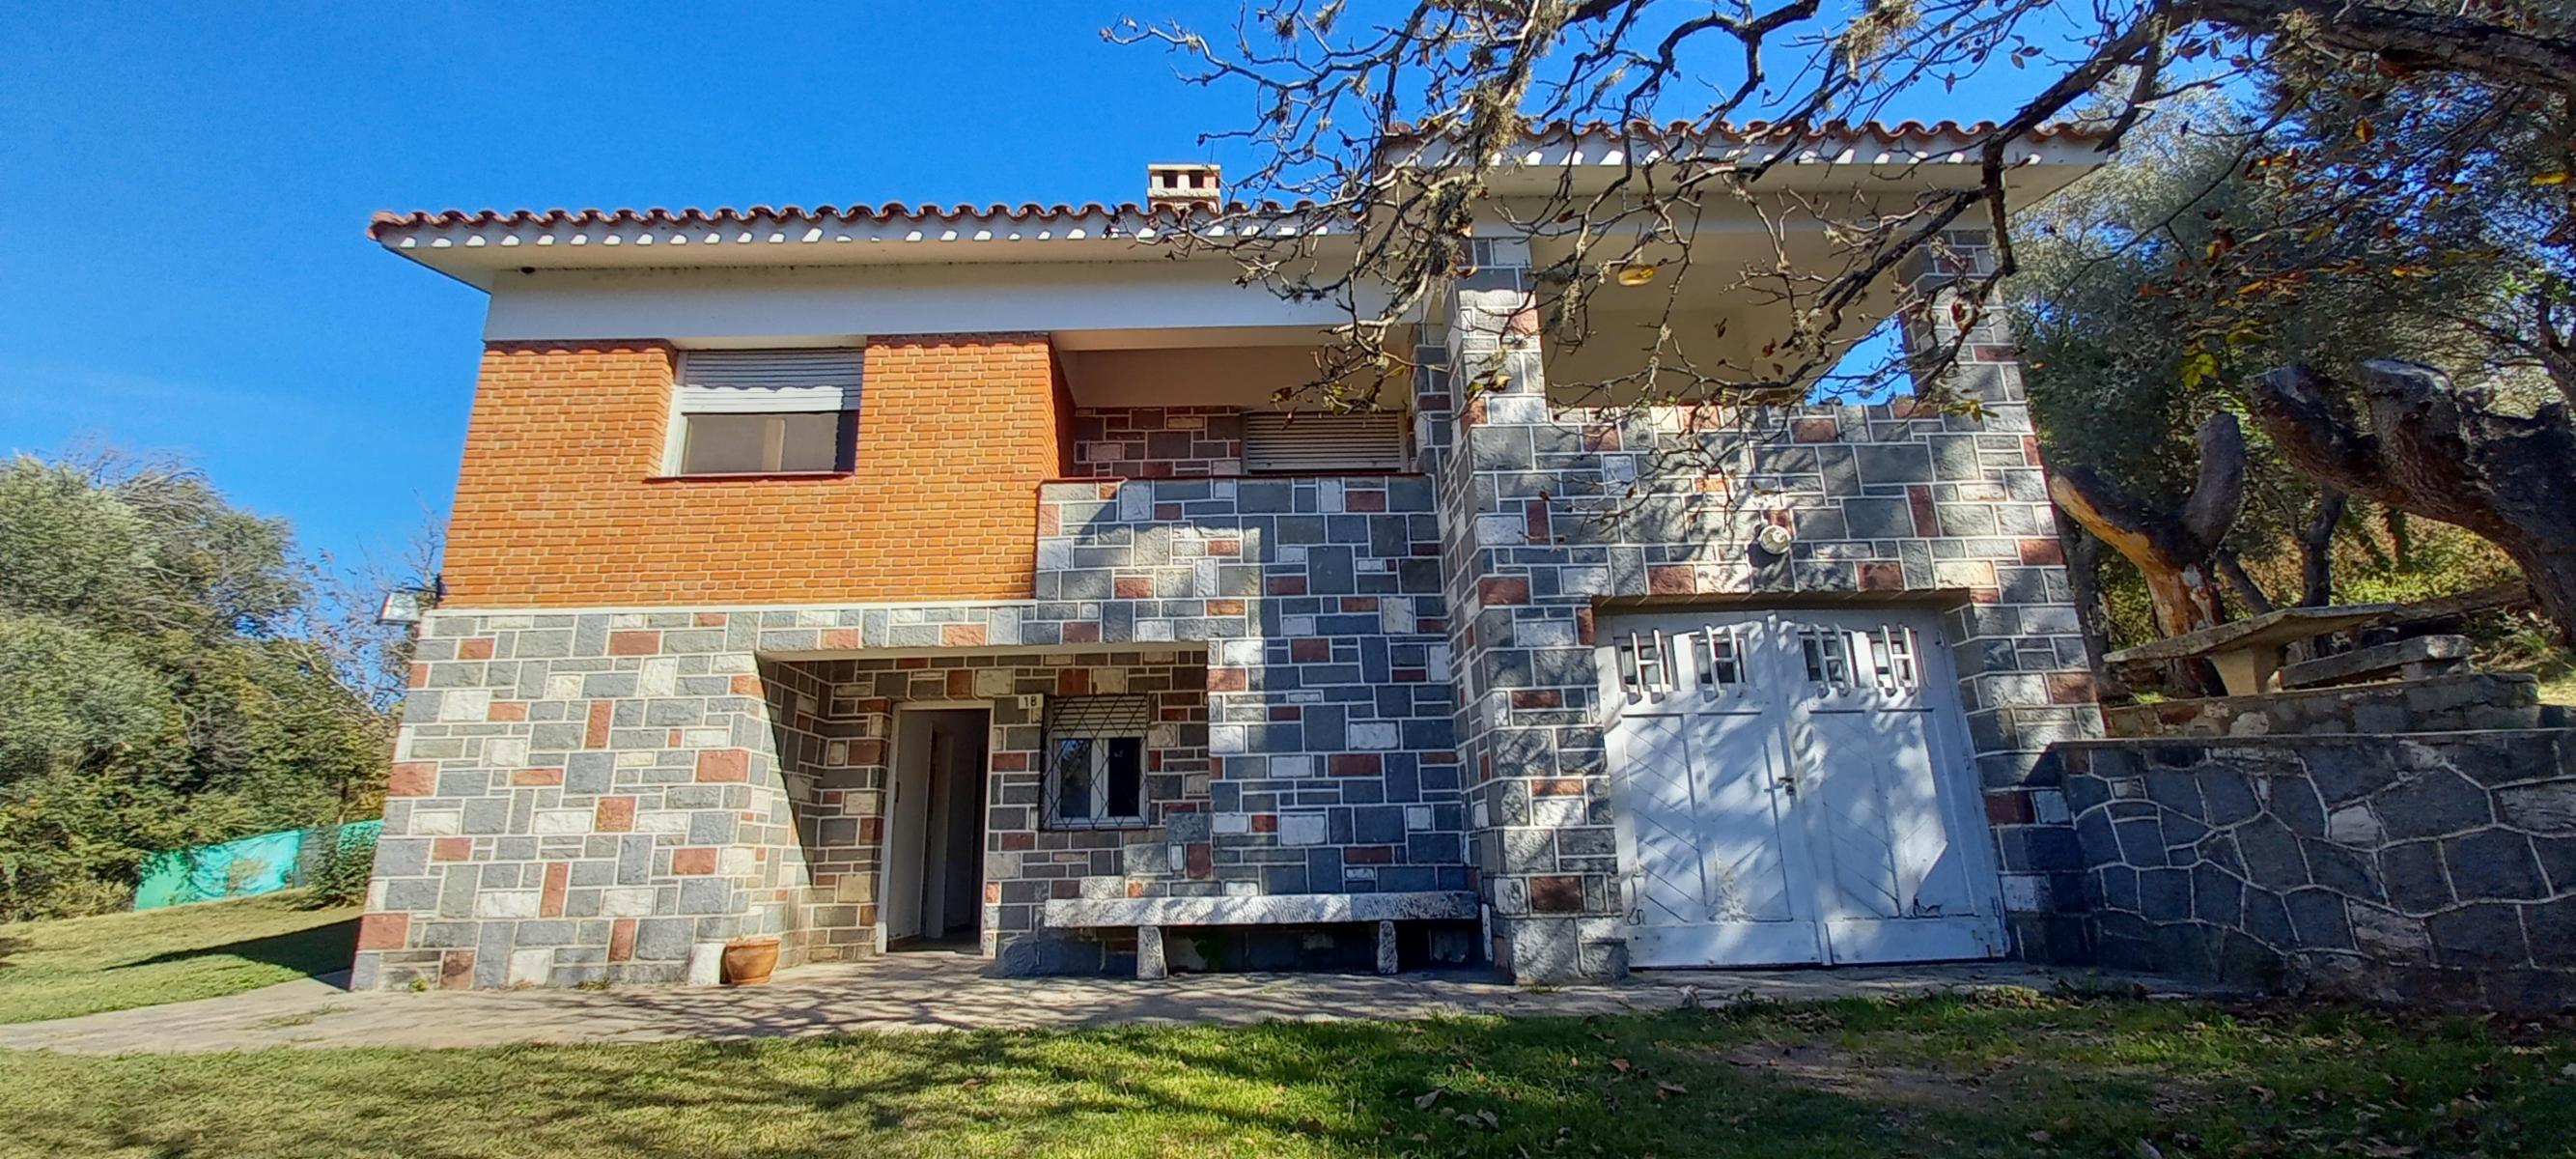 Casa de Dos Plantas + casa Parque 3150 m2 , Valle Hermoso, Córdoba